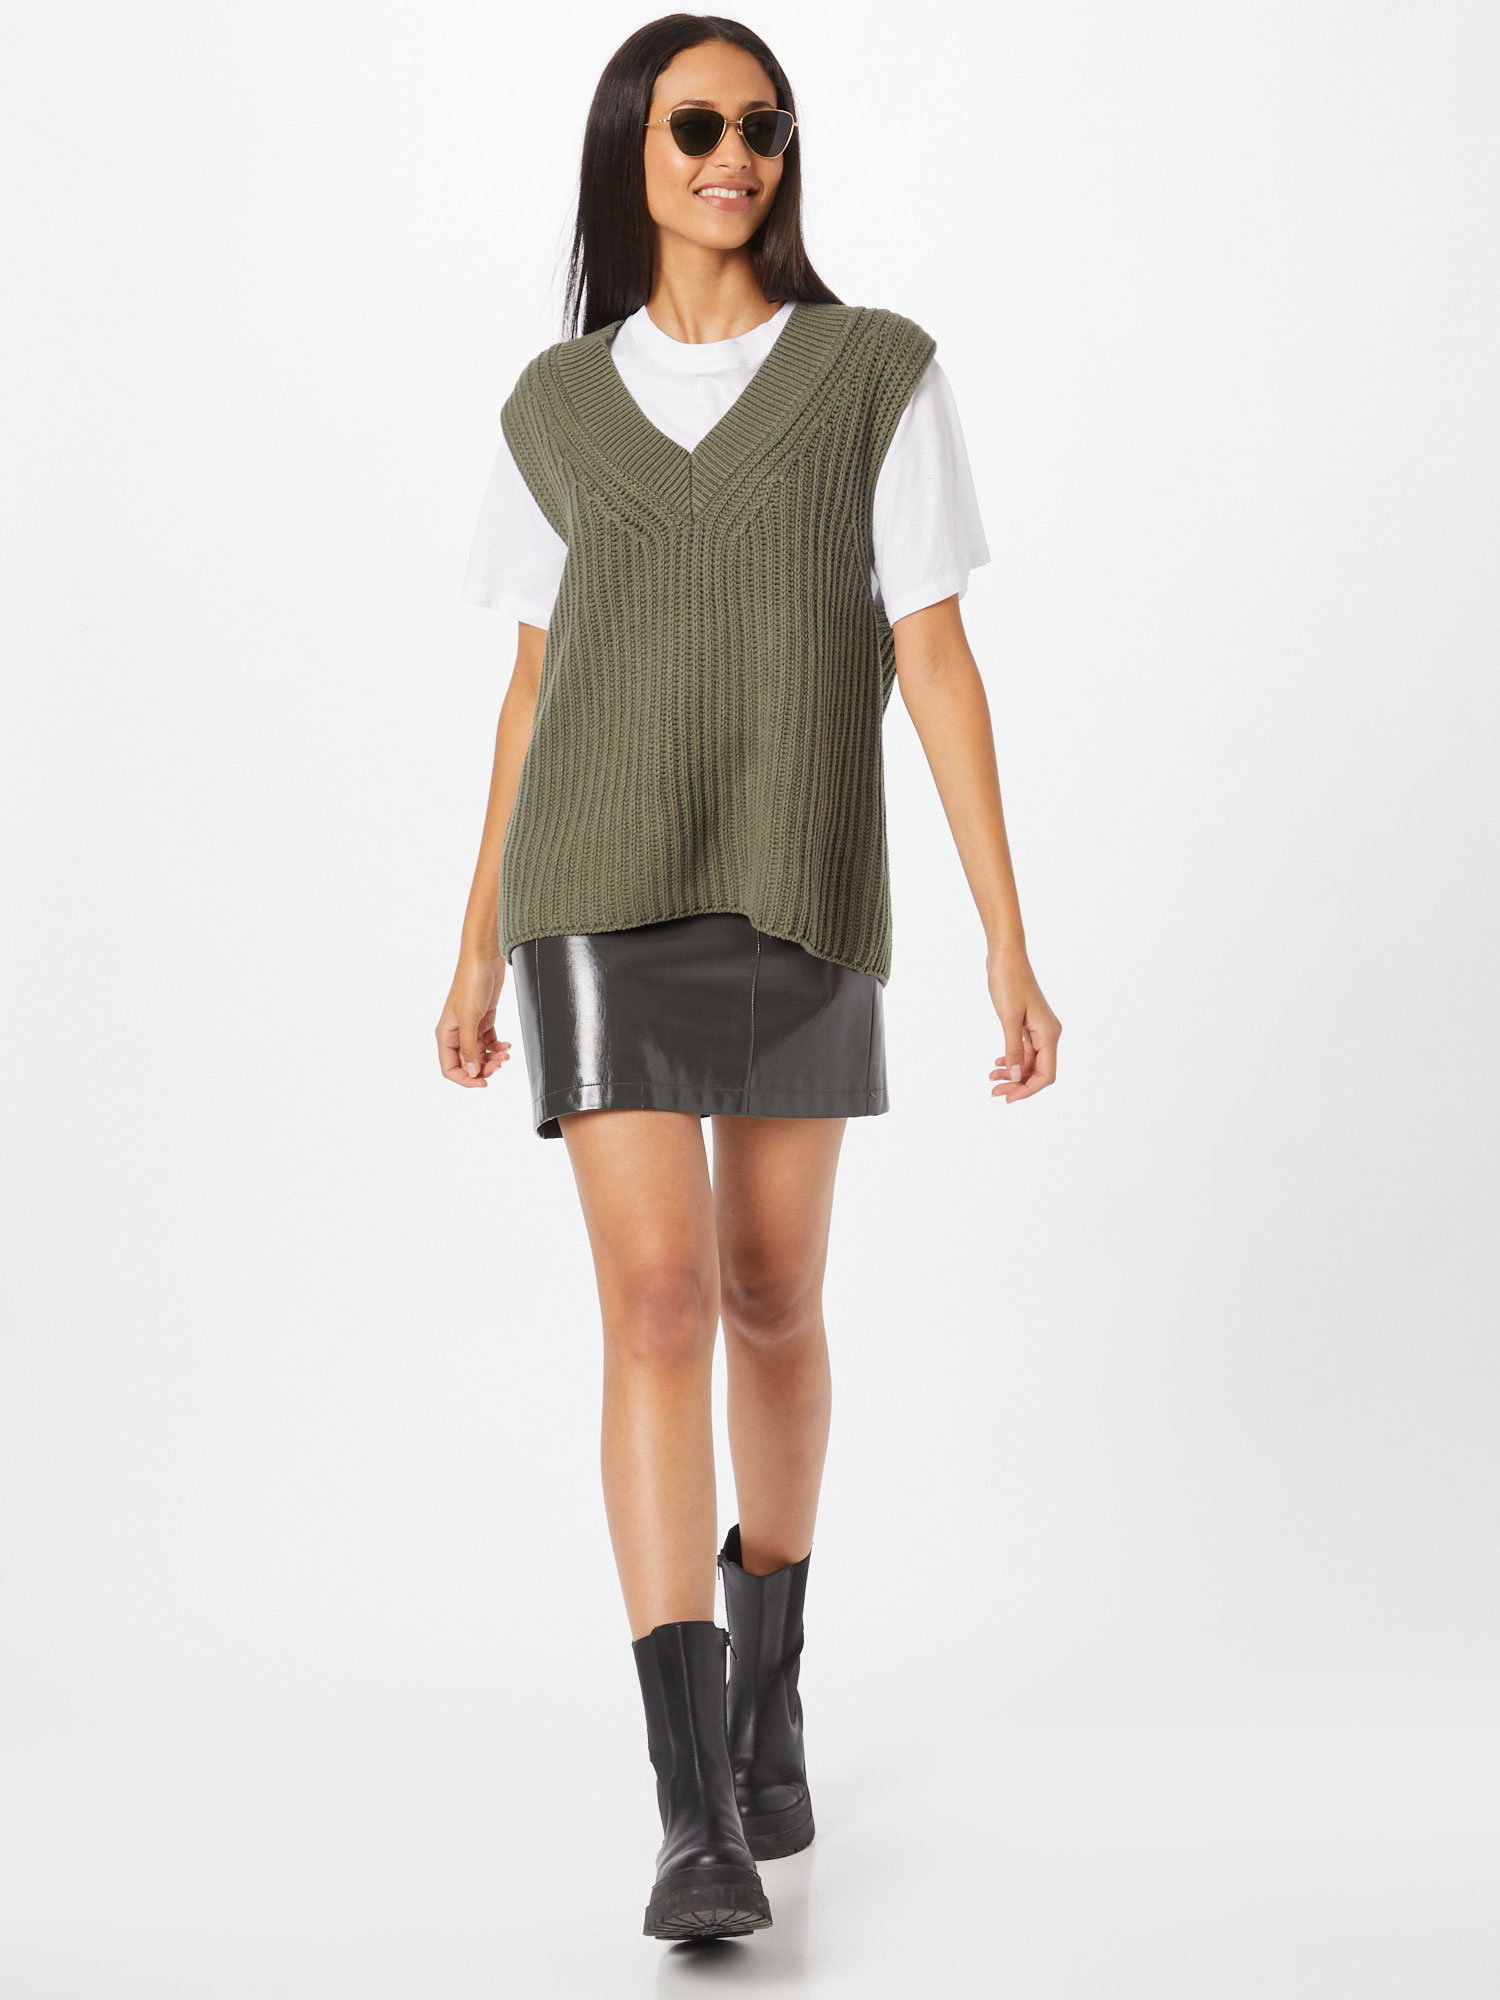 Odzież Kobiety Gina Tricot Sweter Harper w kolorze Zielonym 